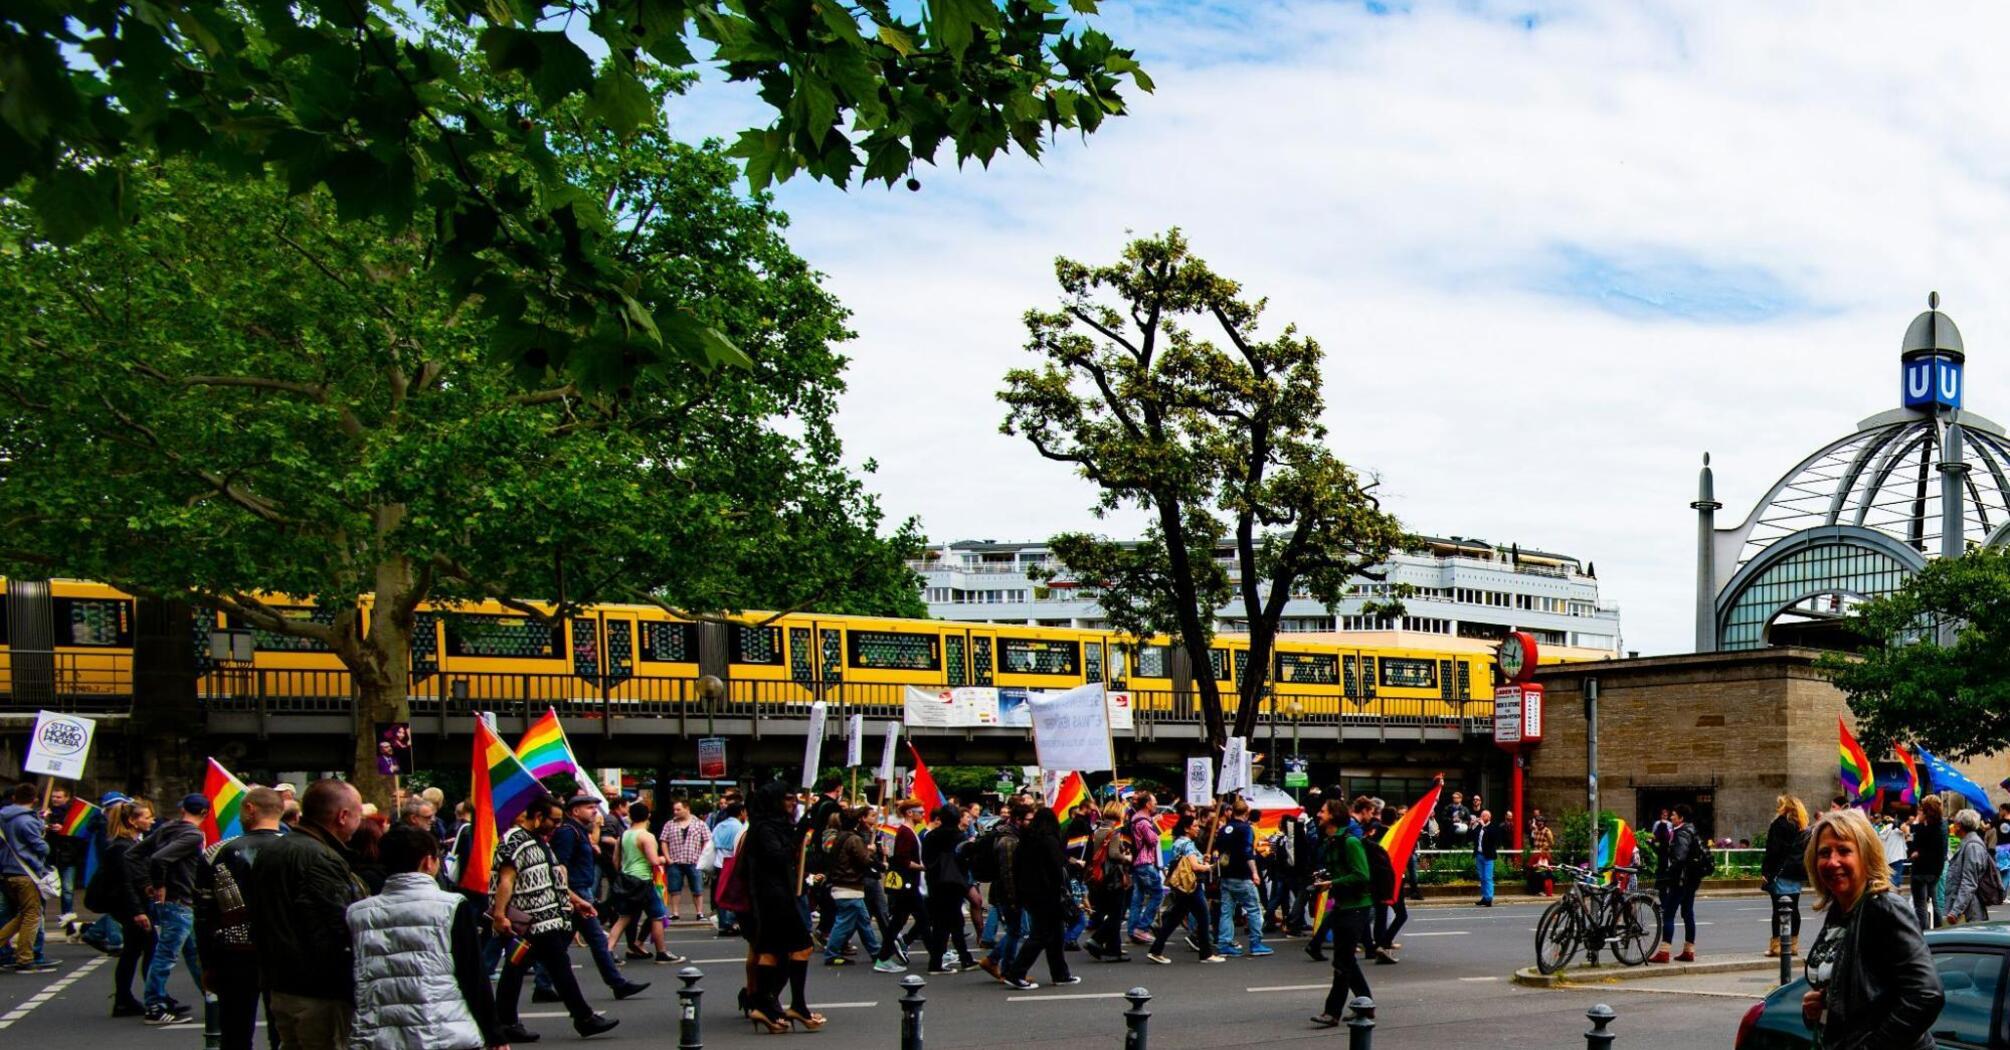 Pride Parade at Nollendorfplatz, Berlin, Germany